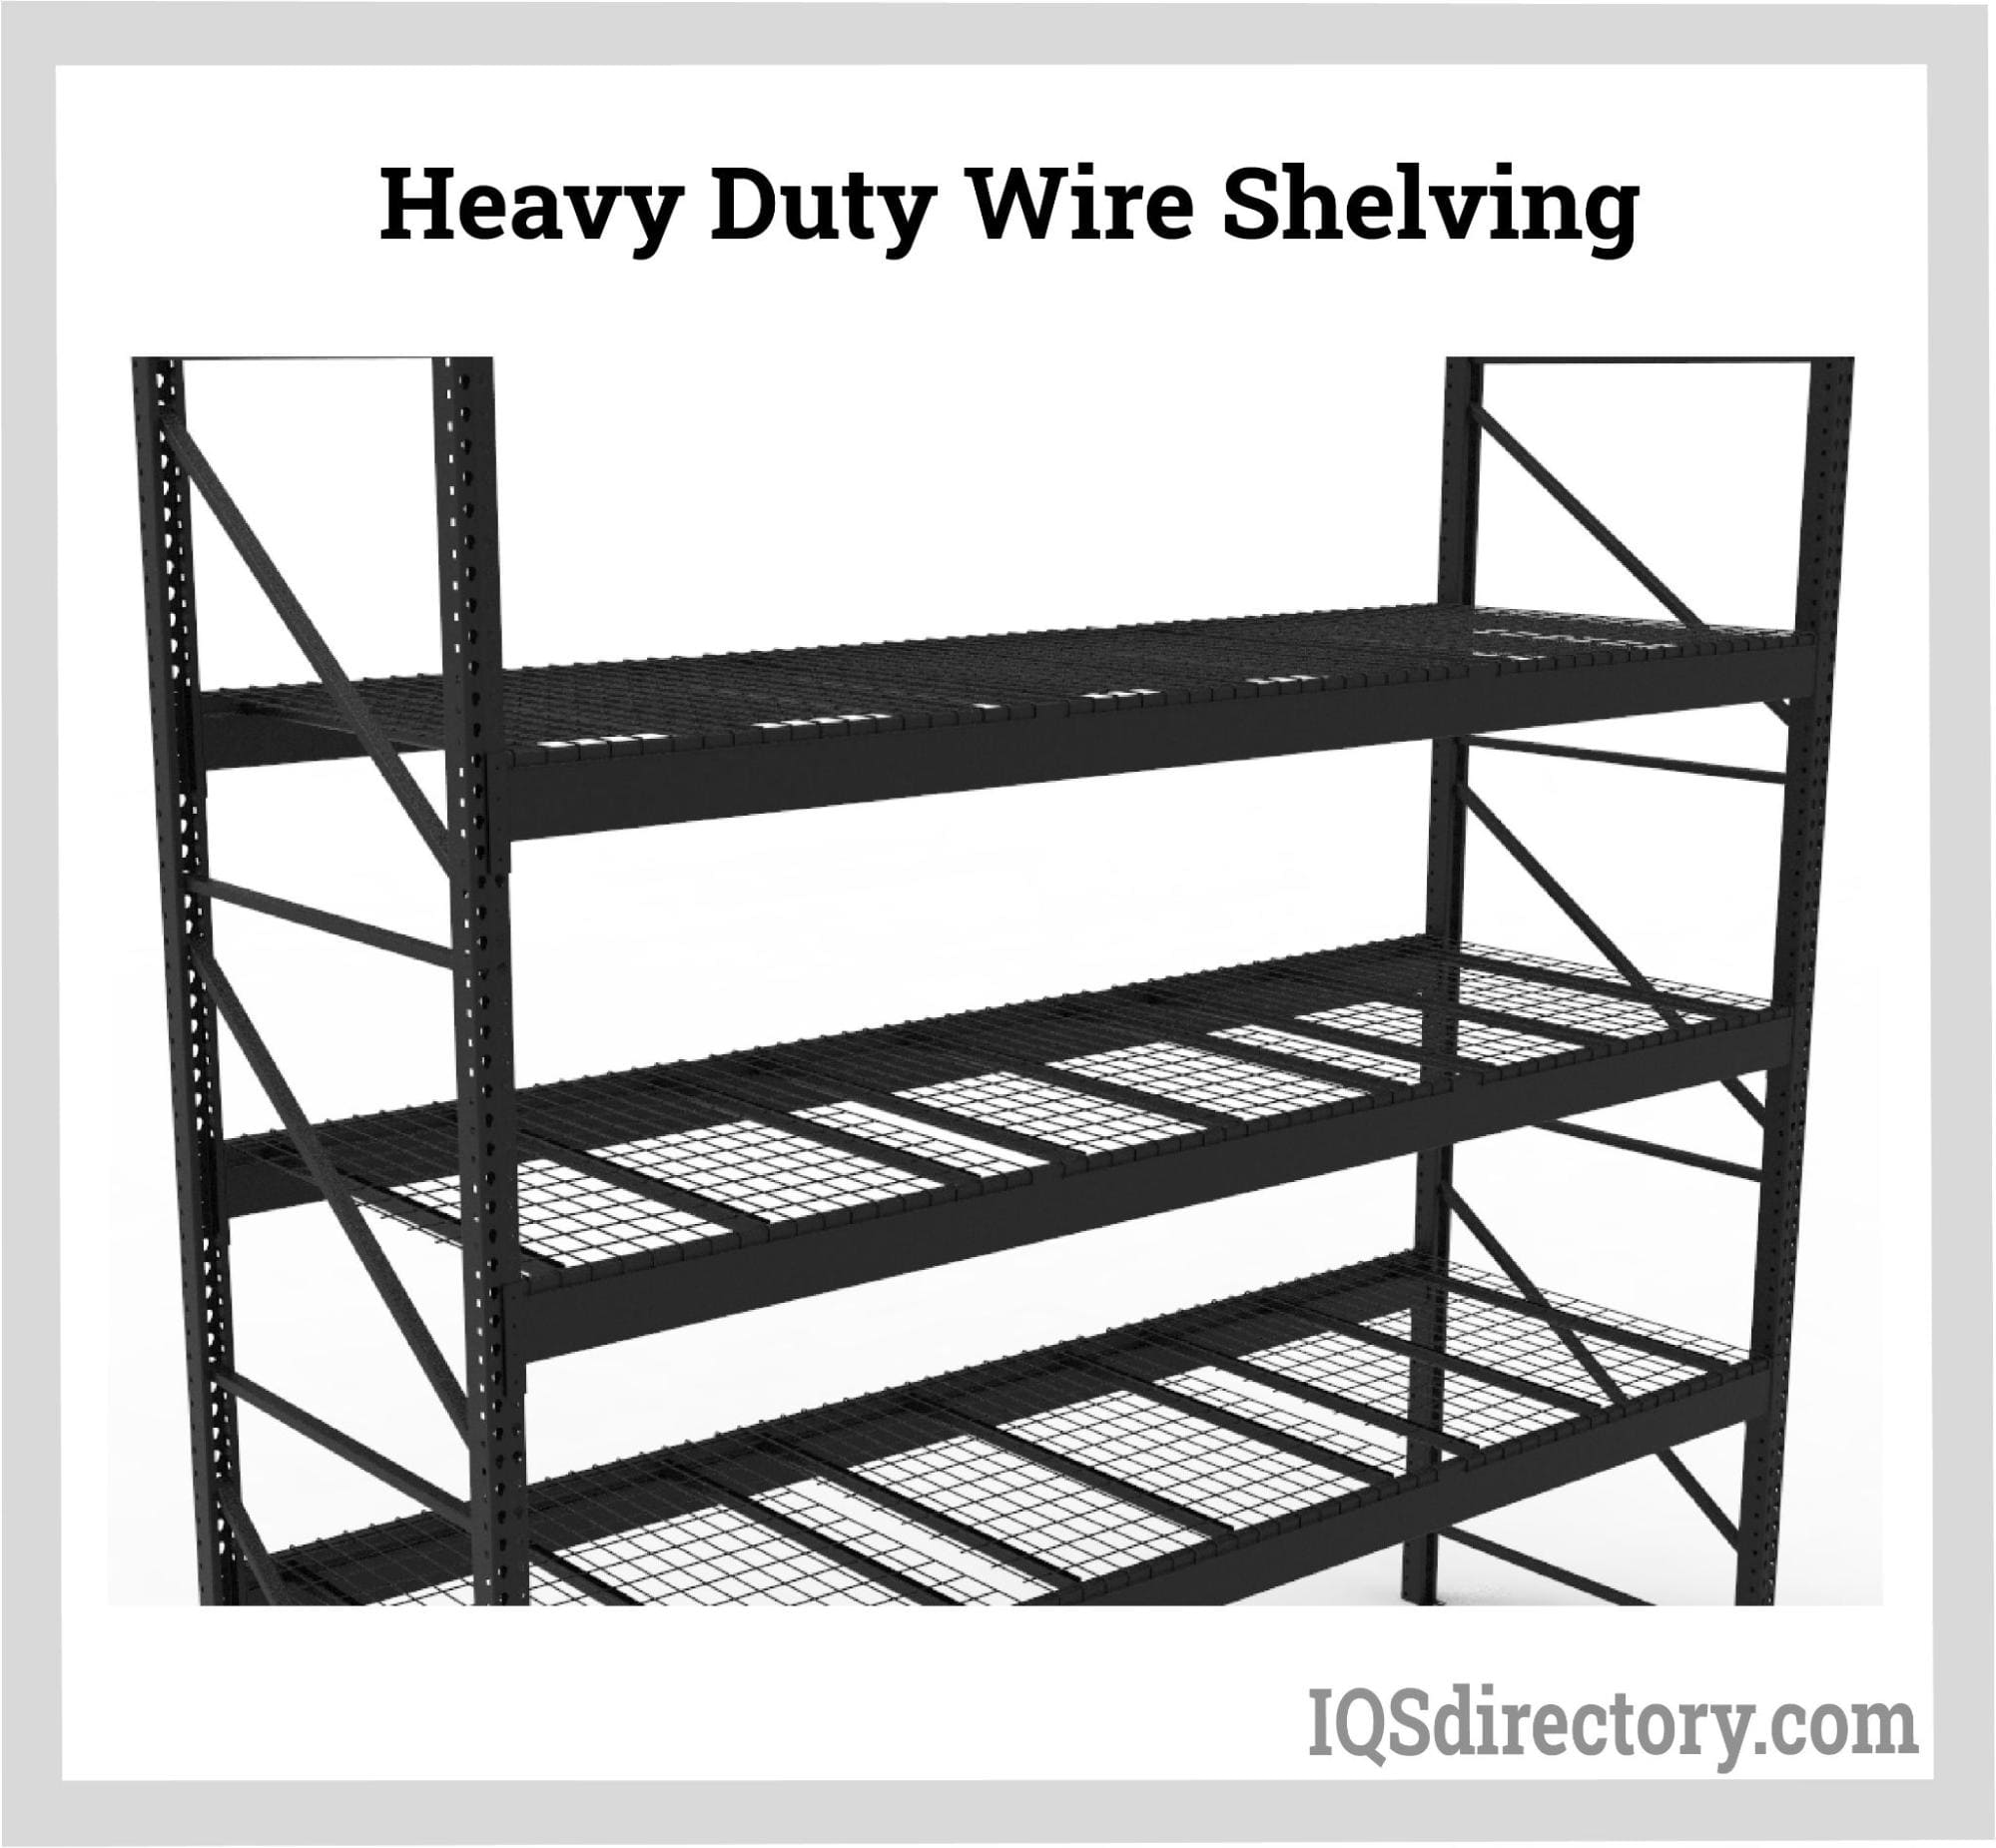 Heavy Duty Wire Shelving